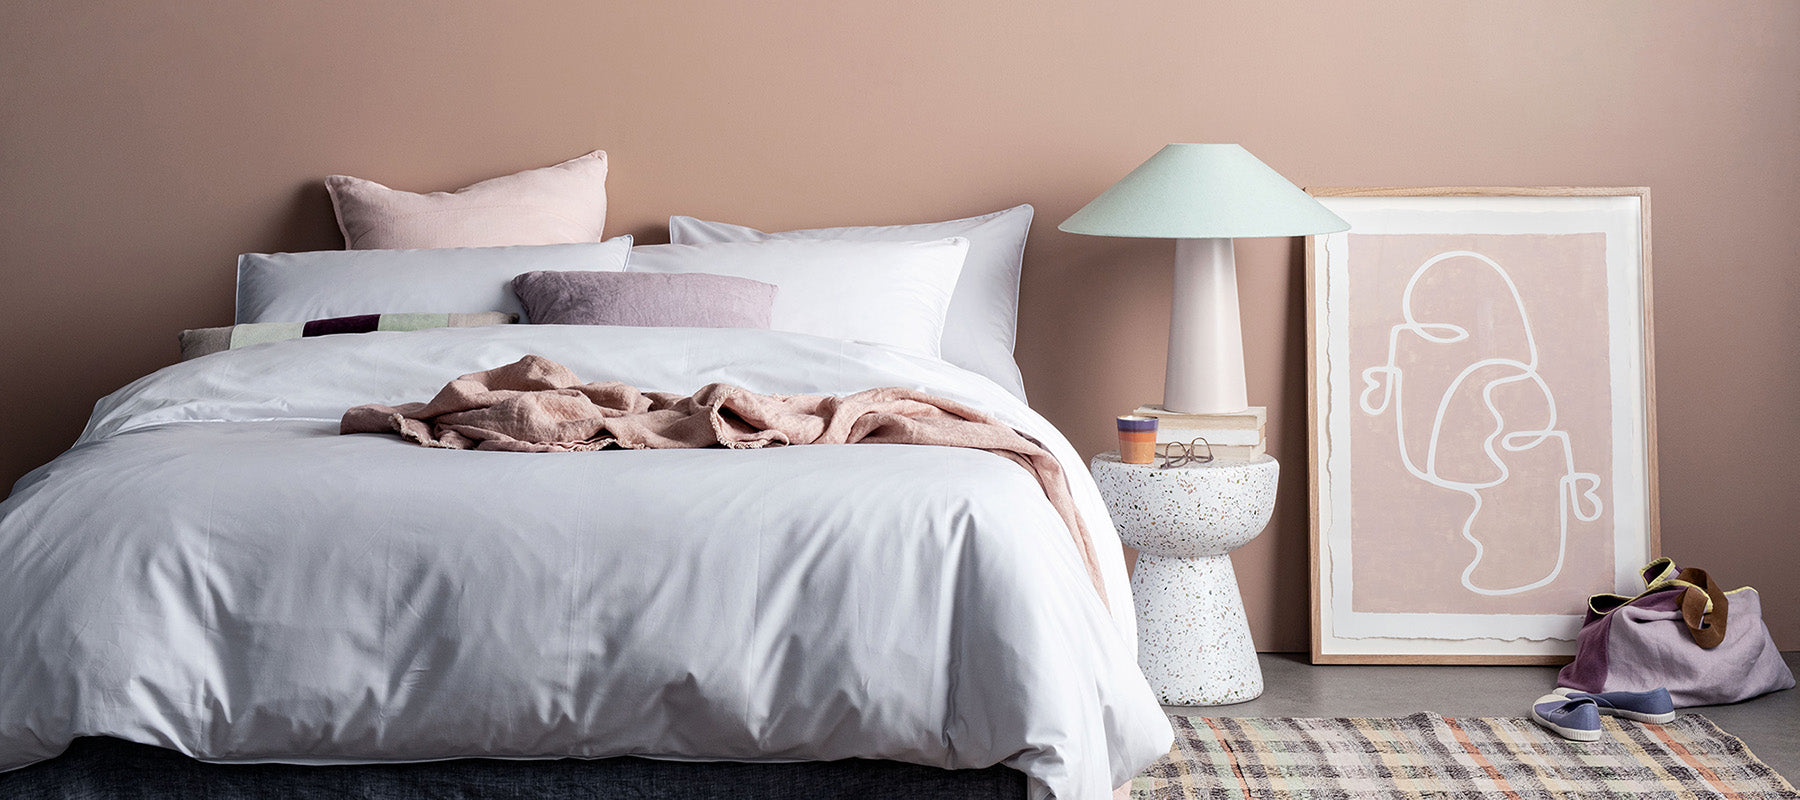 Schlafzimmer mit feiner grauer bettwäsche aus weichem tencel stoff. hautfarbene wand und diverse dekor artikel neben dem bett